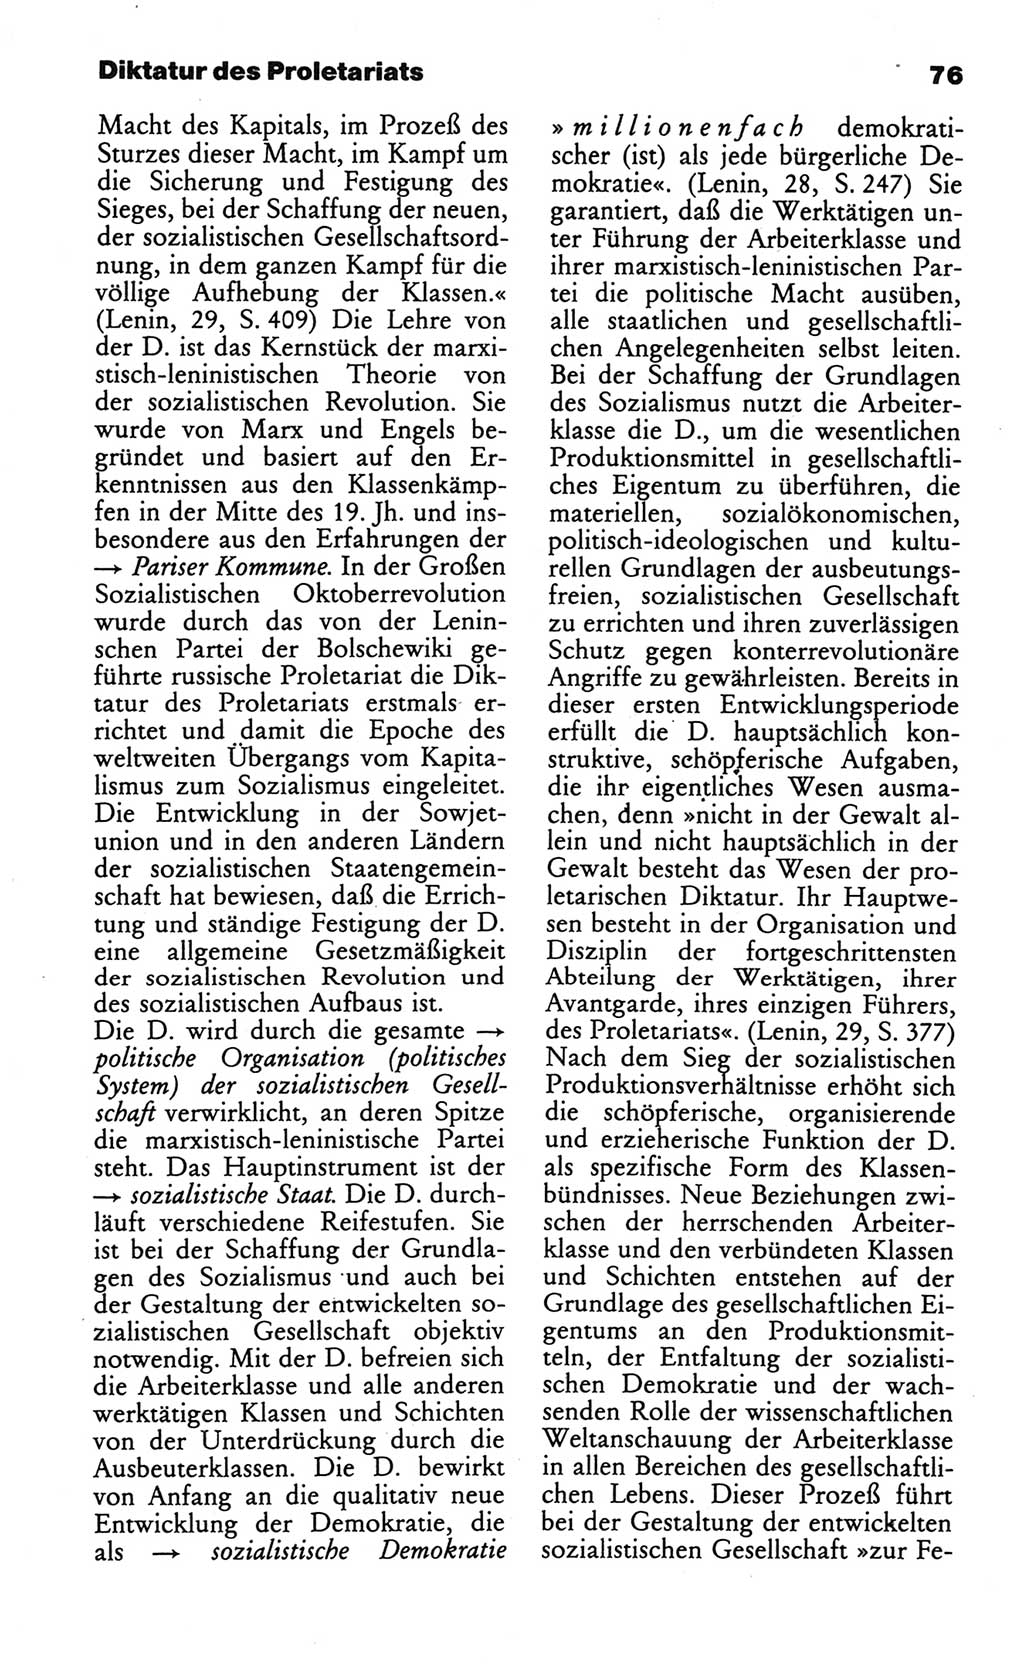 Wörterbuch des wissenschaftlichen Kommunismus [Deutsche Demokratische Republik (DDR)] 1984, Seite 76 (Wb. wiss. Komm. DDR 1984, S. 76)